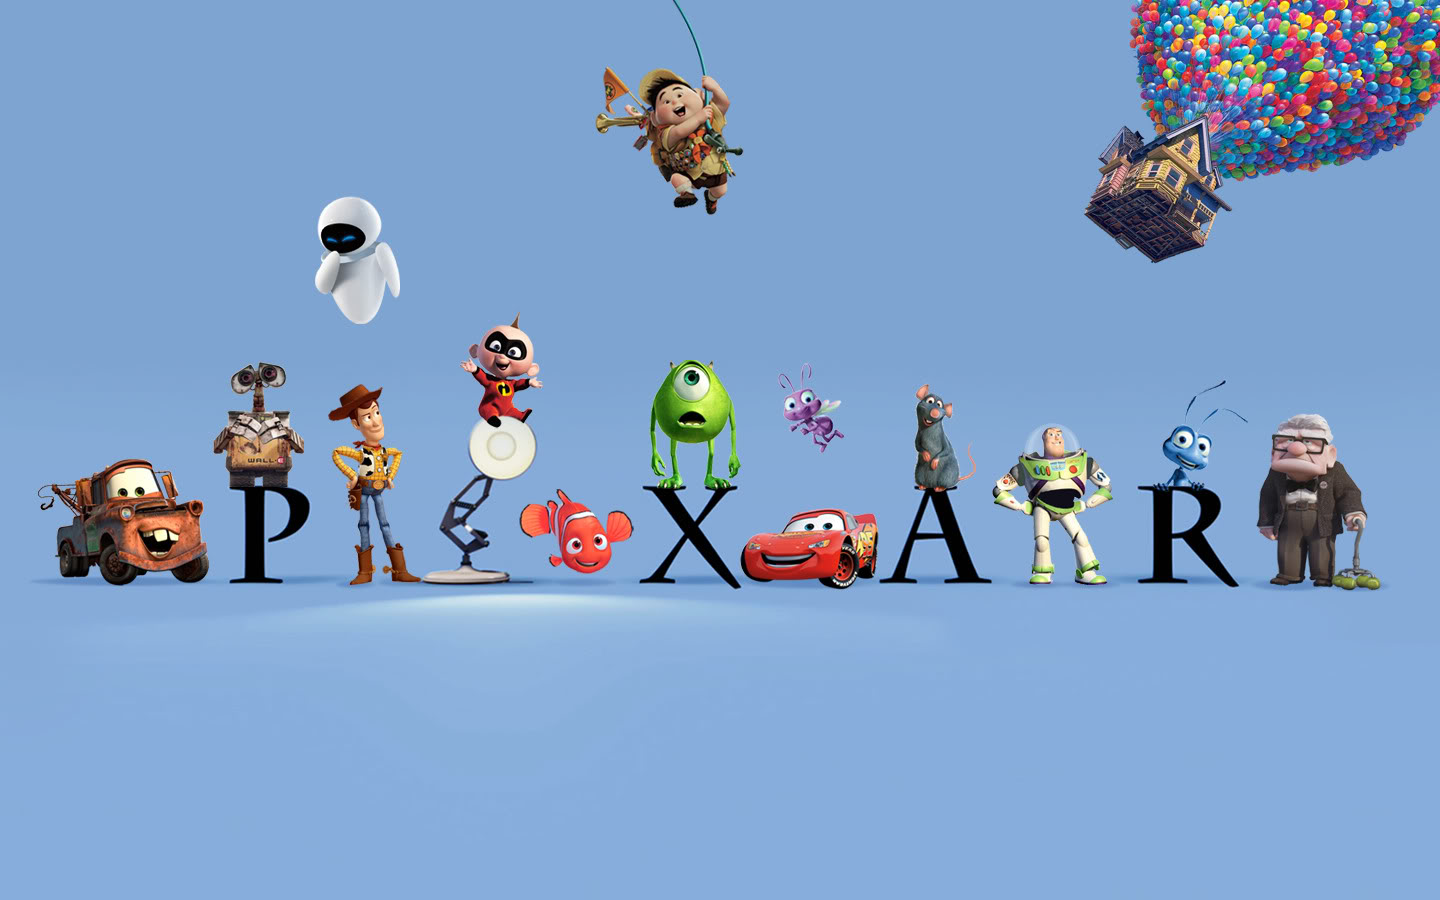 Pixar revela las conexiones entre sus películas